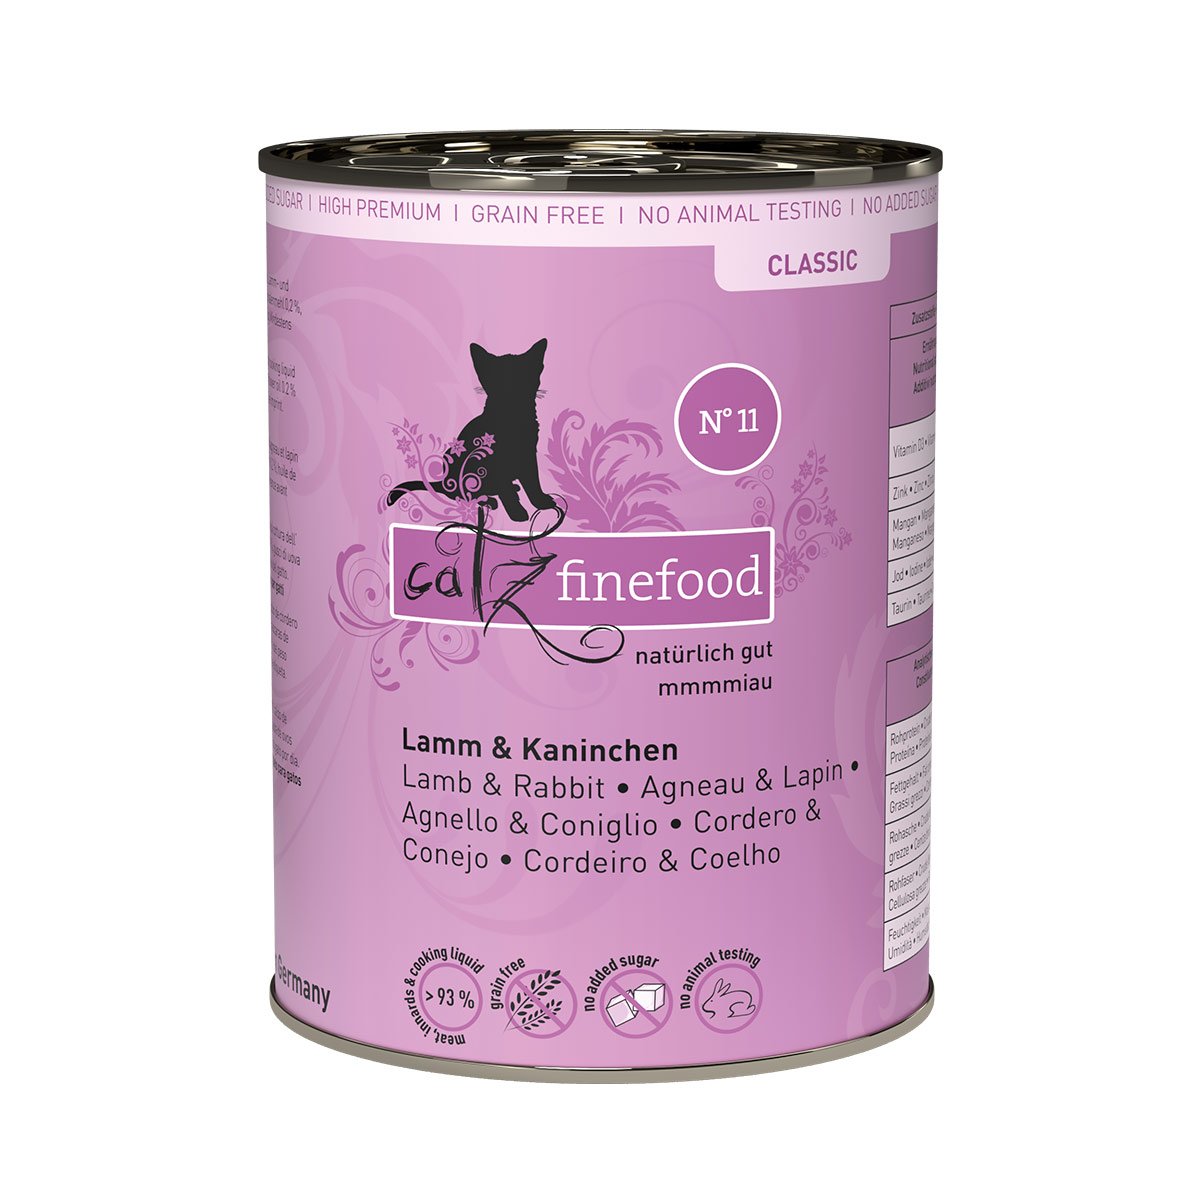 Catz Finefood Classic N° 11 - Lamm & Kaninchen 6x400g von Catz Finefood